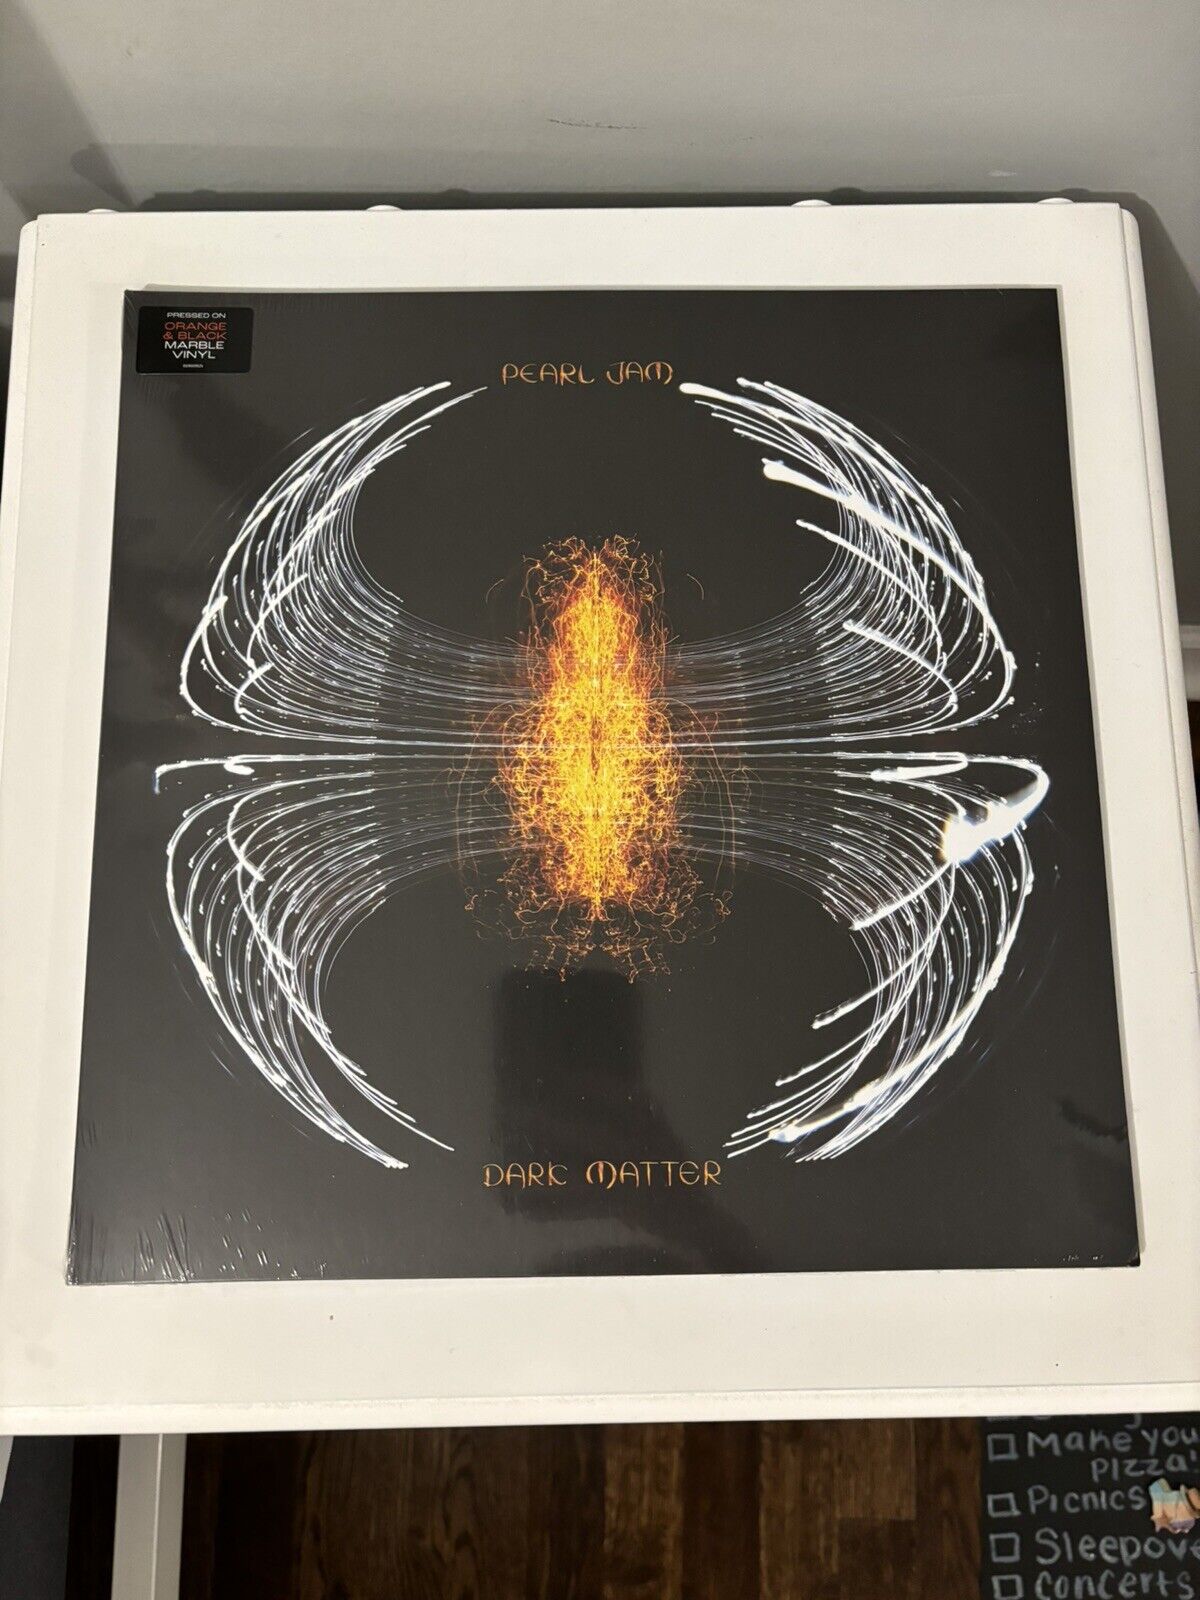 Pearl Jam Dark Matter Philadelphia Region Variant Vinyl Limited Edition Of 1500